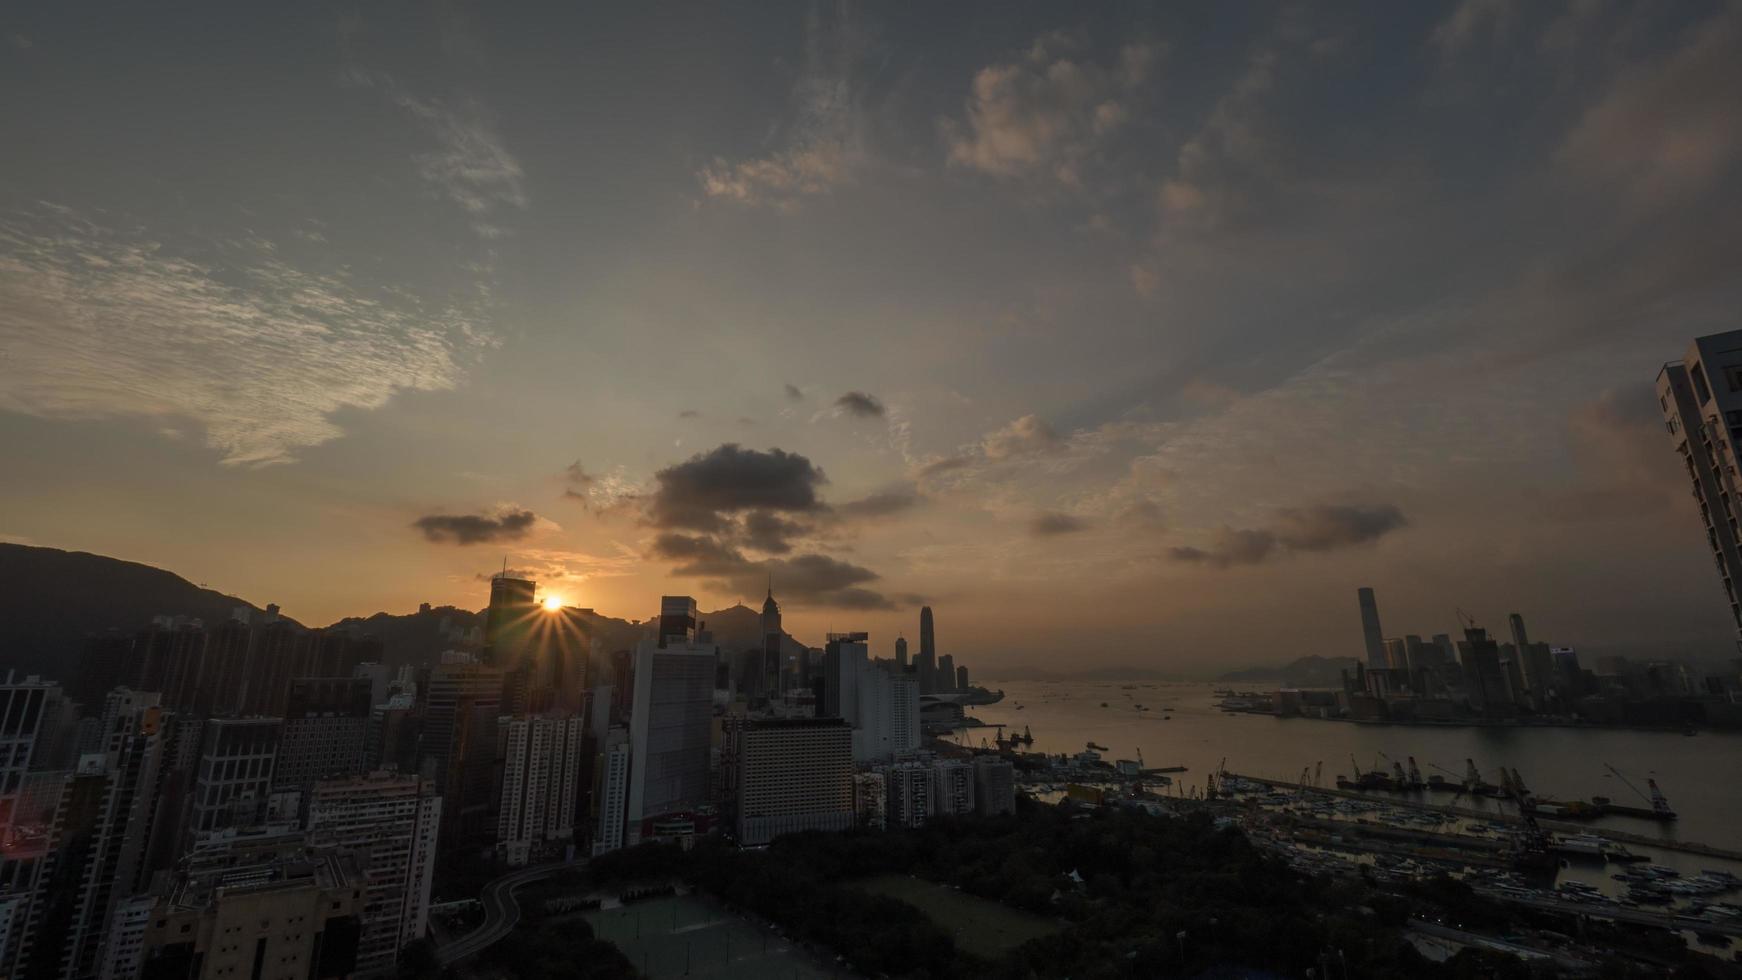 Hong Kong, 2020 - Sunrise over buildings photo